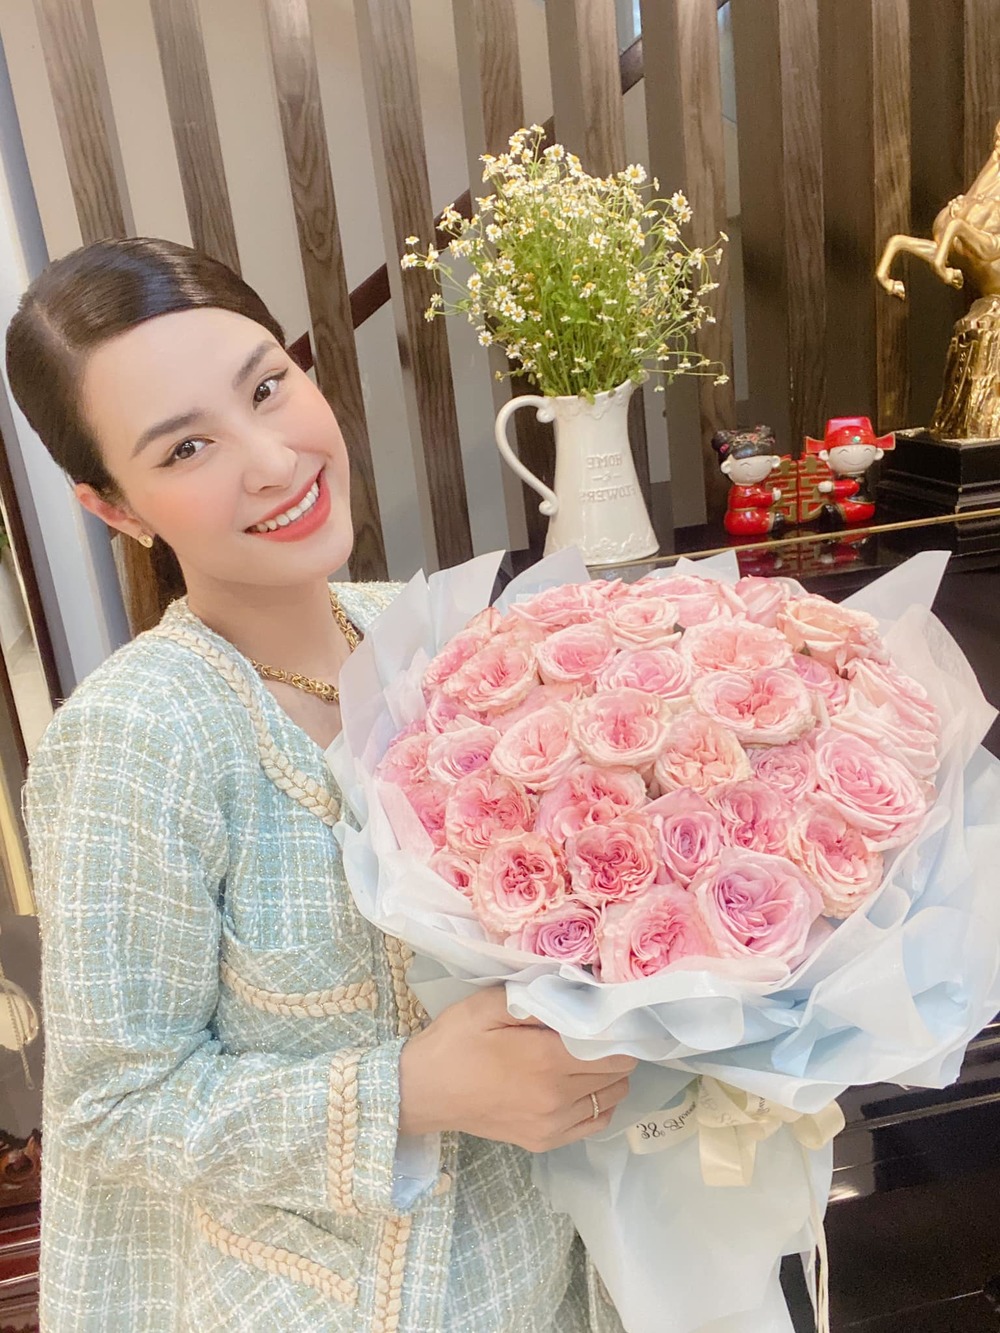  
"Mẹ bỉm sữa" được chồng tặng hẳn bó hoa rực rỡ nhân ngày kỉ niệm. - Tin sao Viet - Tin tuc sao Viet - Scandal sao Viet - Tin tuc cua Sao - Tin cua Sao